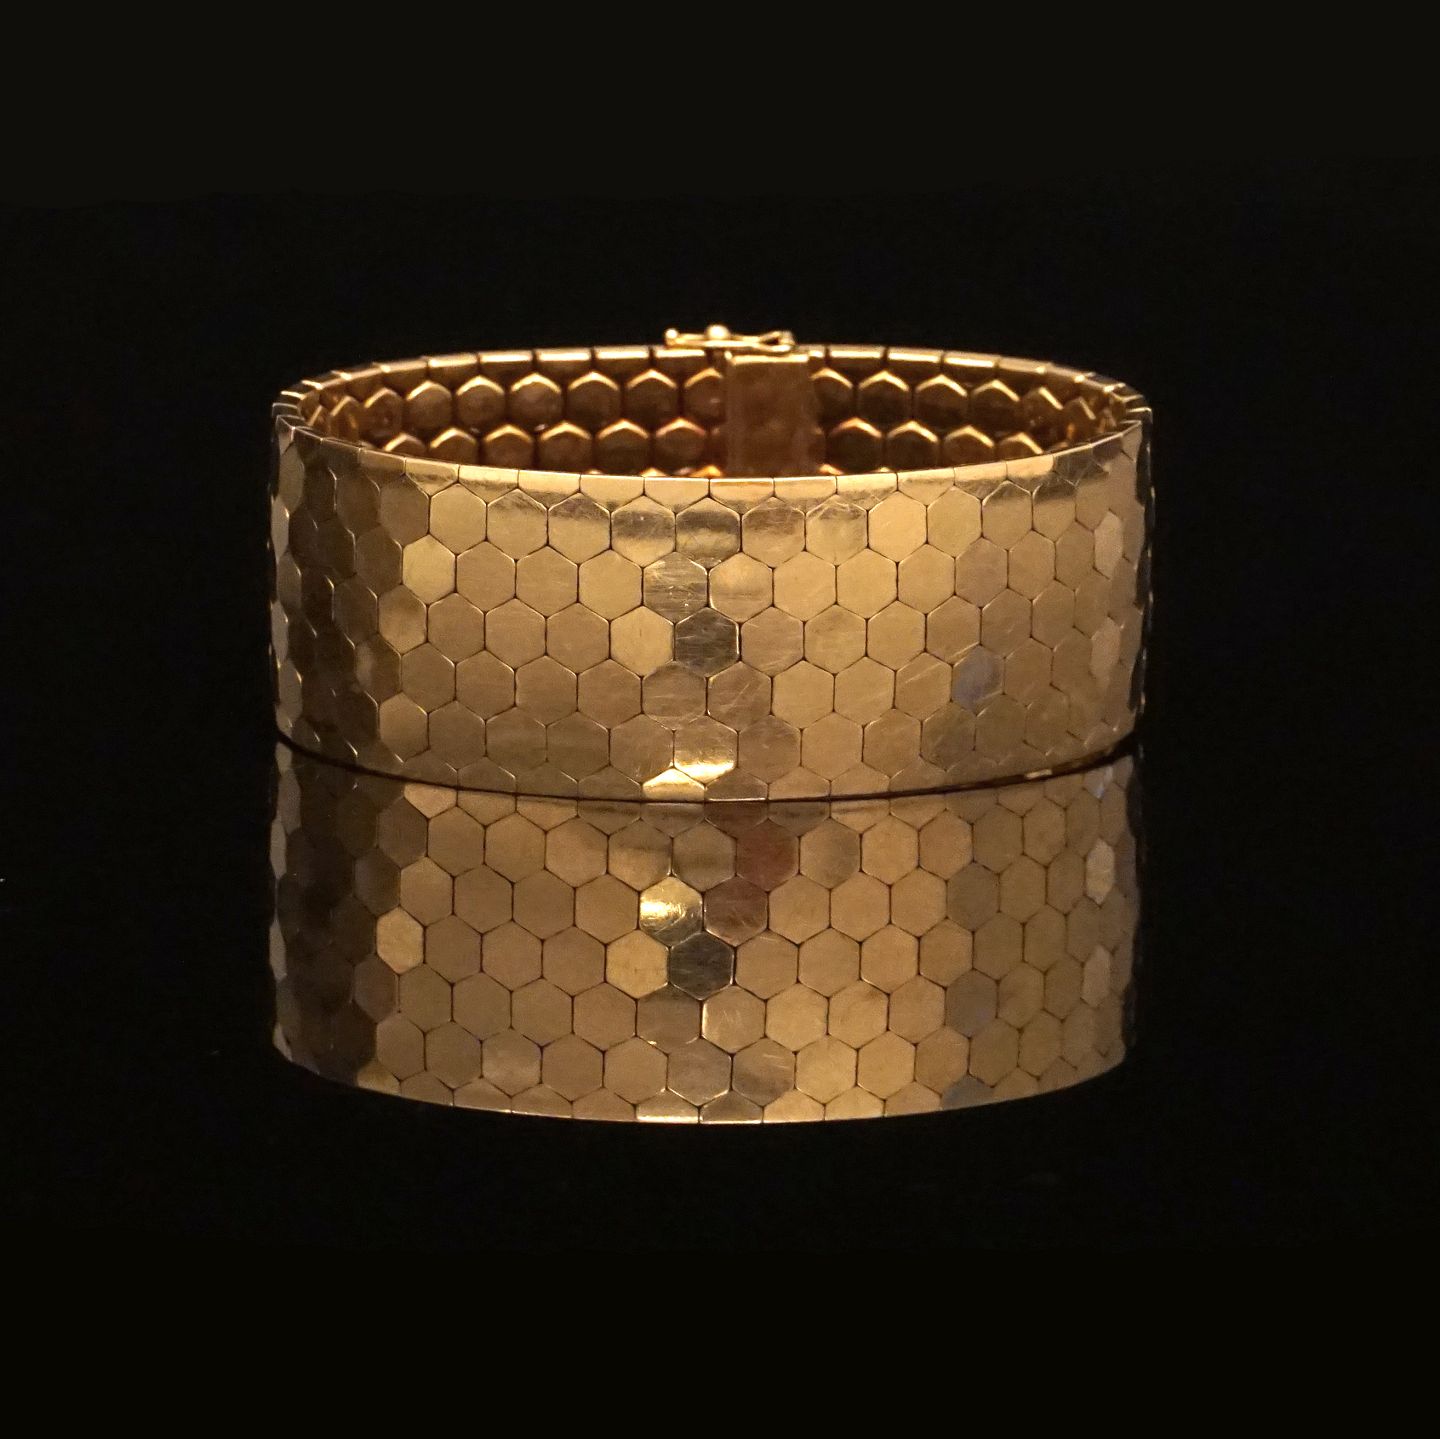 Meander skade straf www.Antikvitet.net - Bredt og kraftigt bikube armbånd i 18kt guld med  dobbelt sikkerhedslås. L: 20,5cm. B: 2,6cm